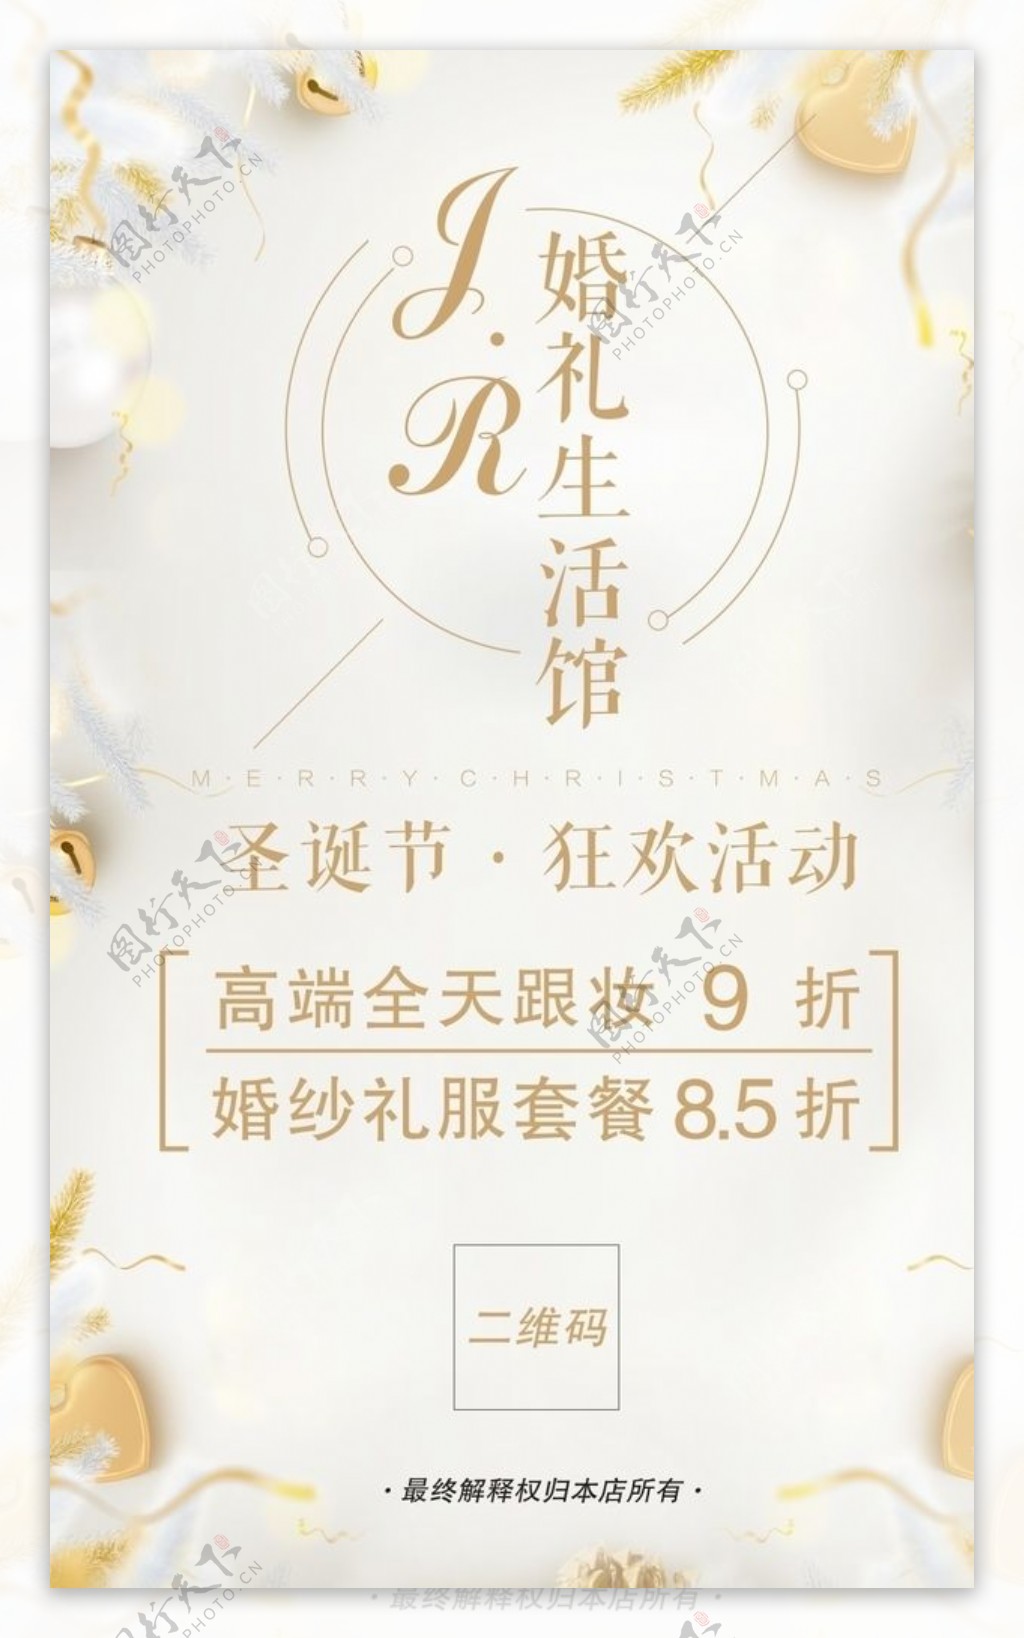 小清新婚礼化妆海报展架